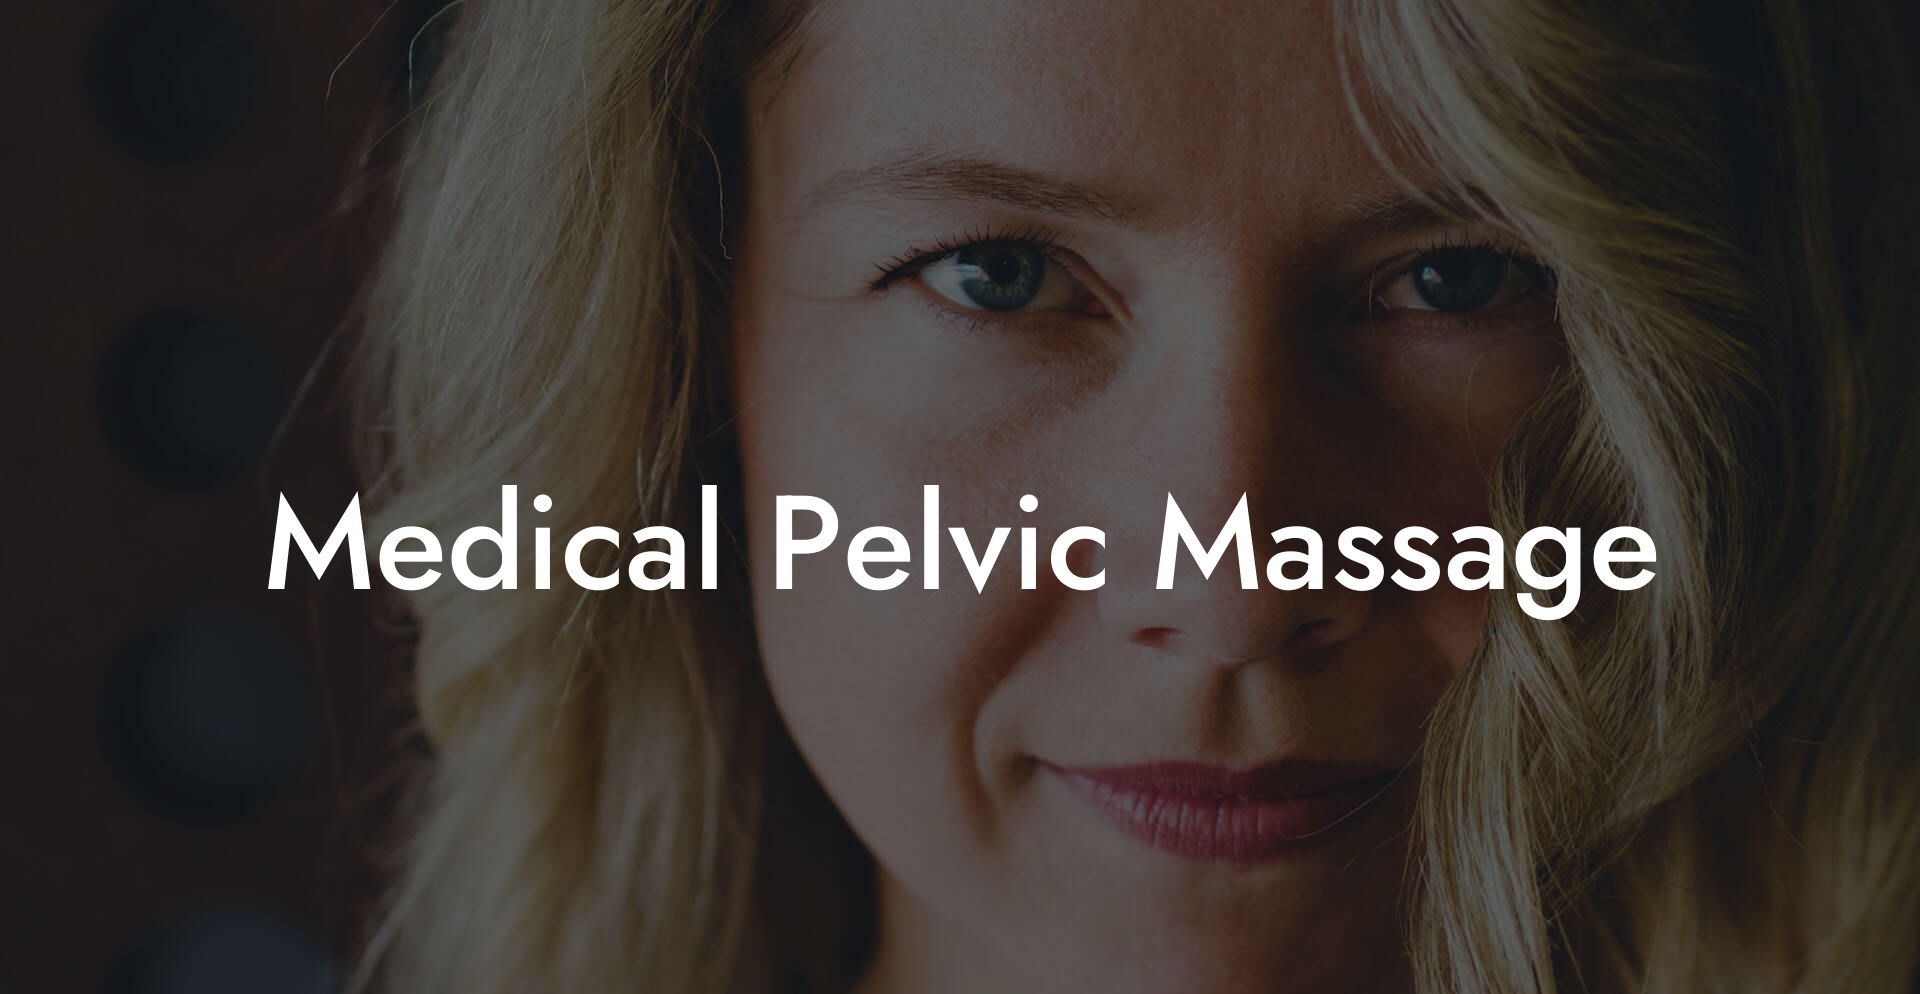 Medical Pelvic Massage